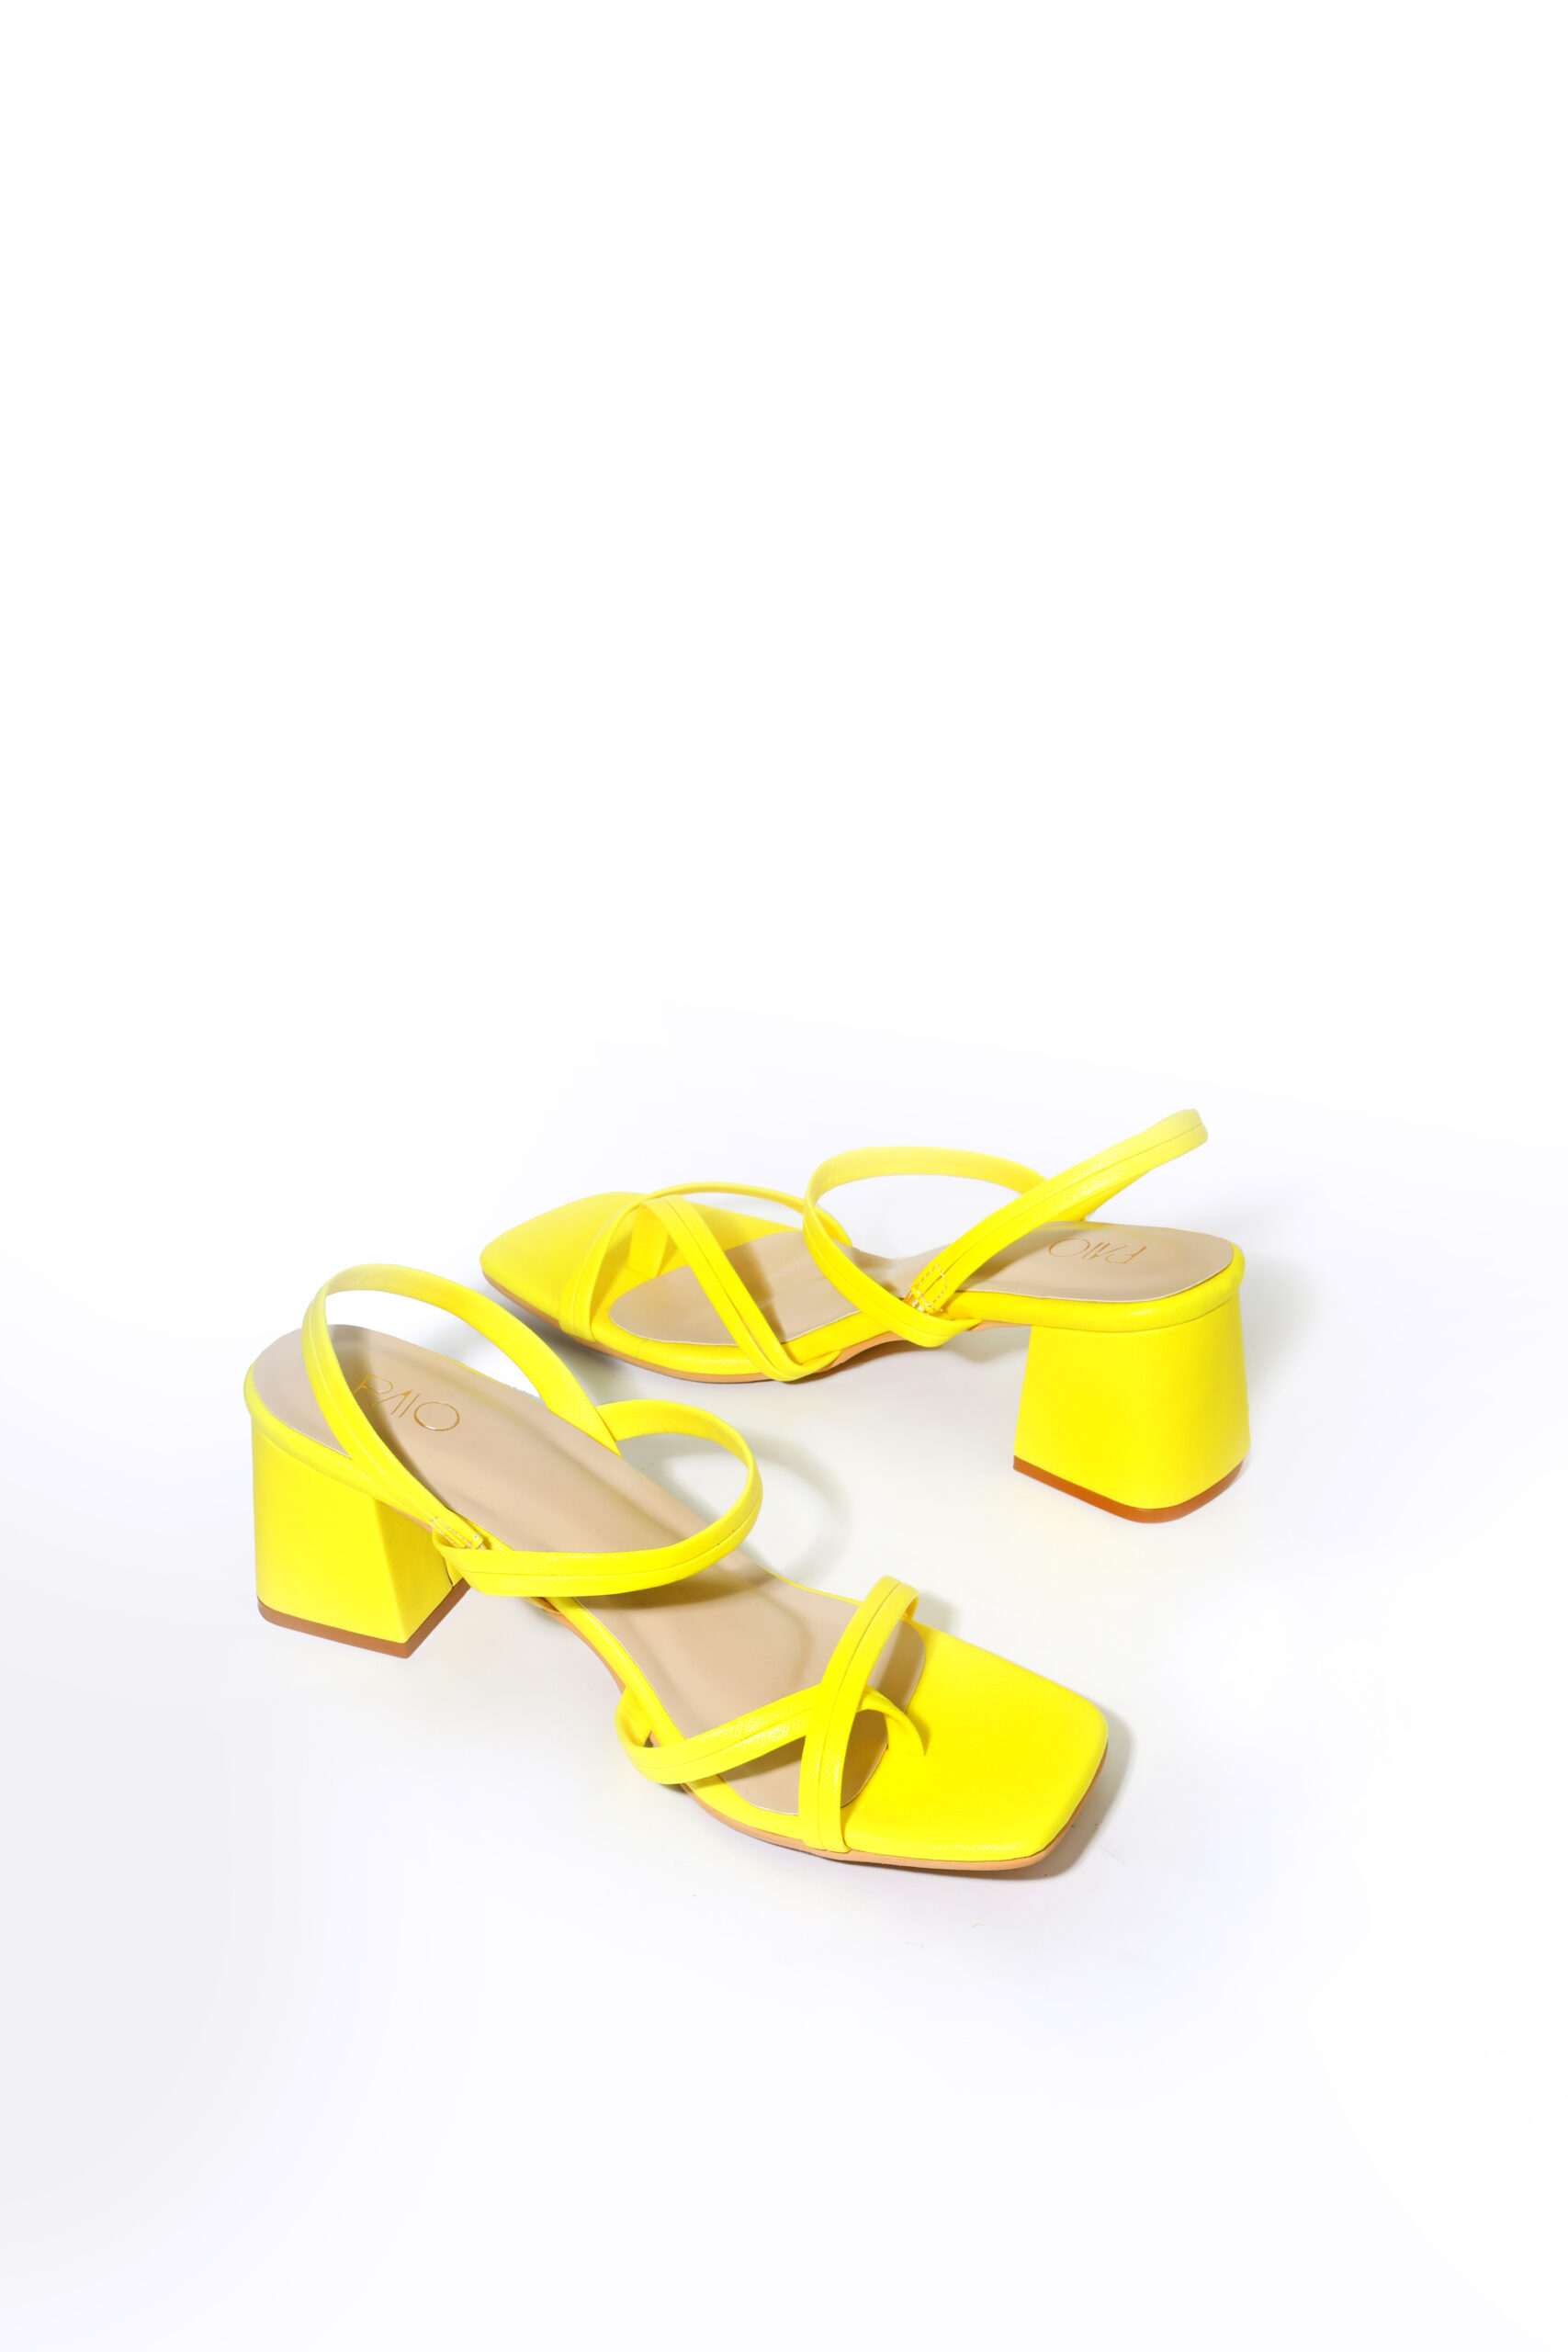 paio yellow heels